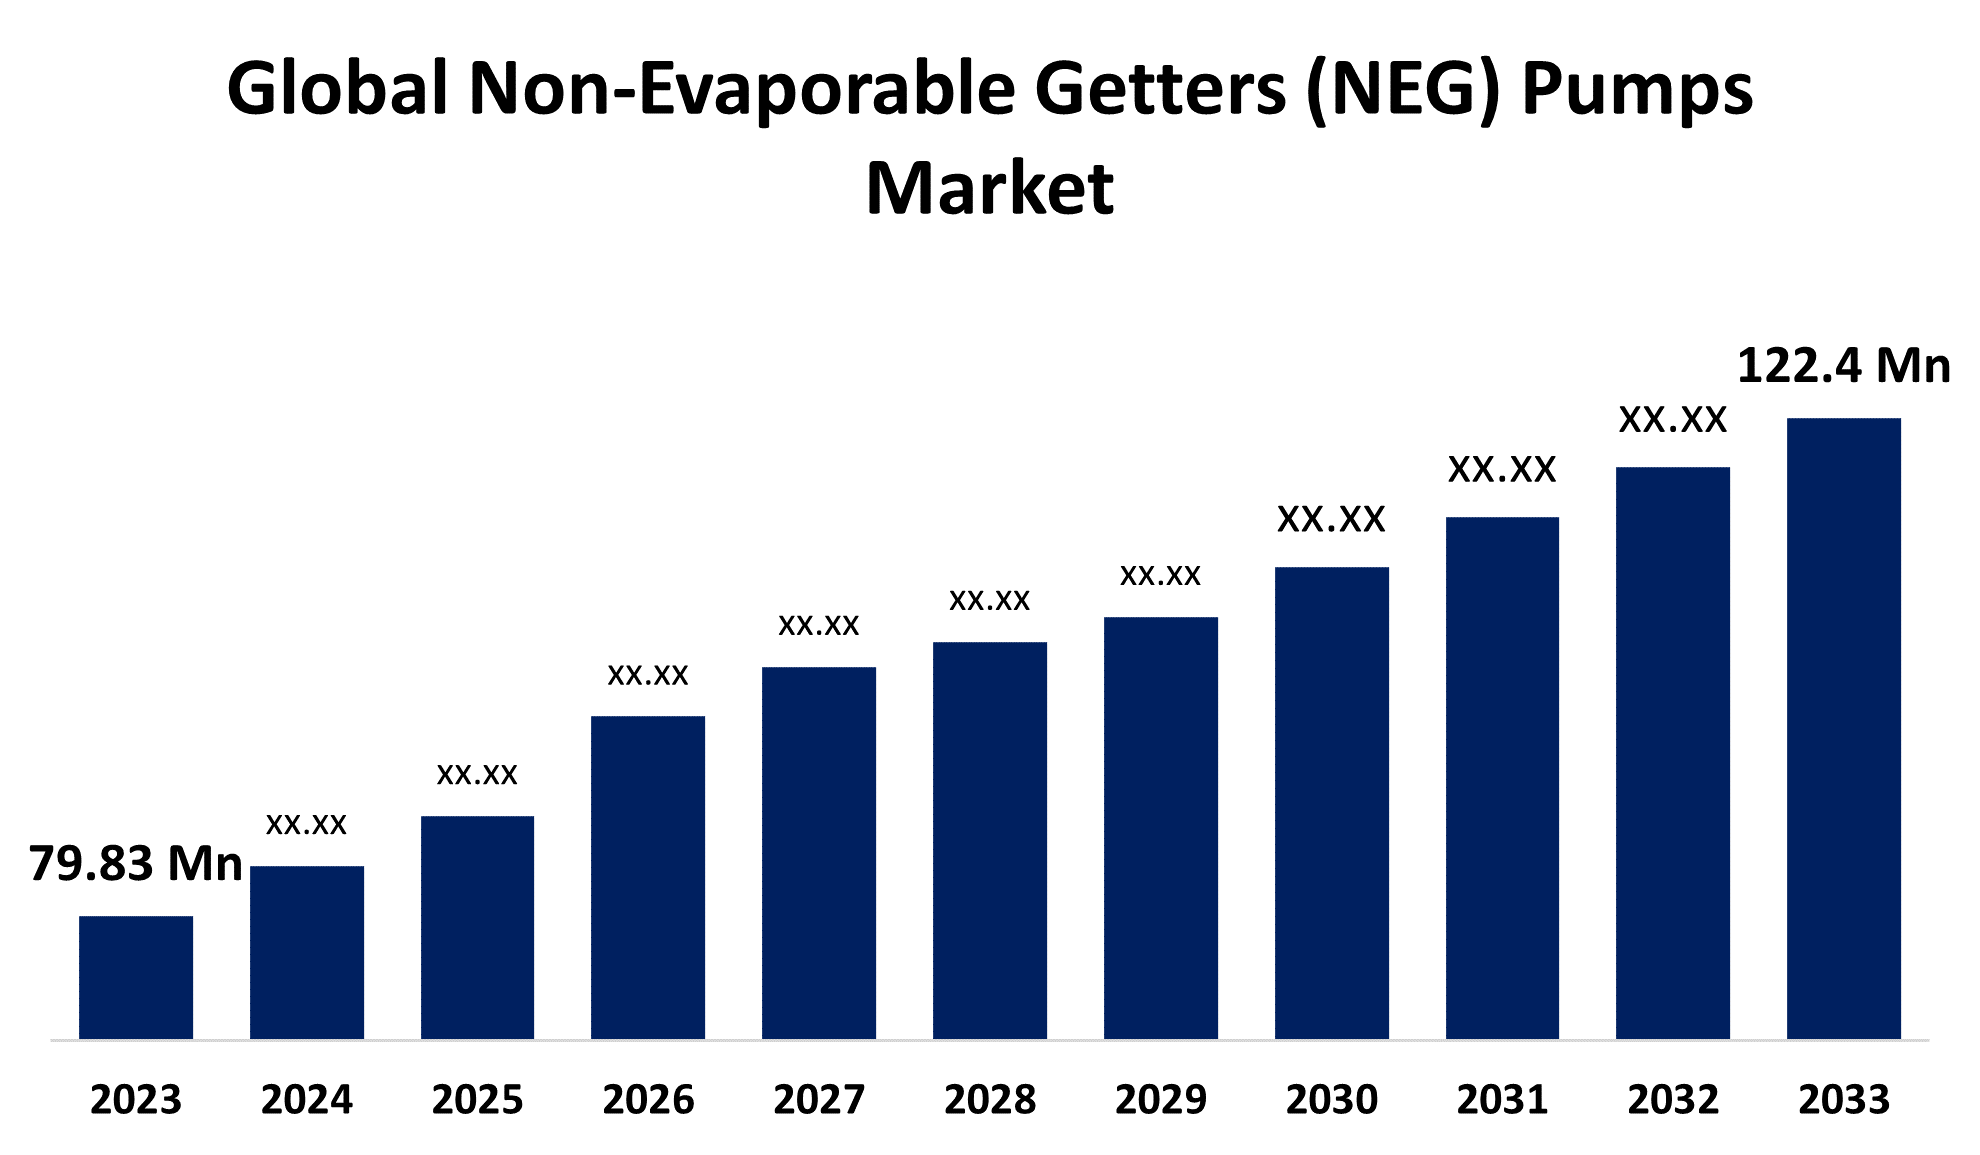 Global Non-Evaporable Getters (NEG) Pumps Market